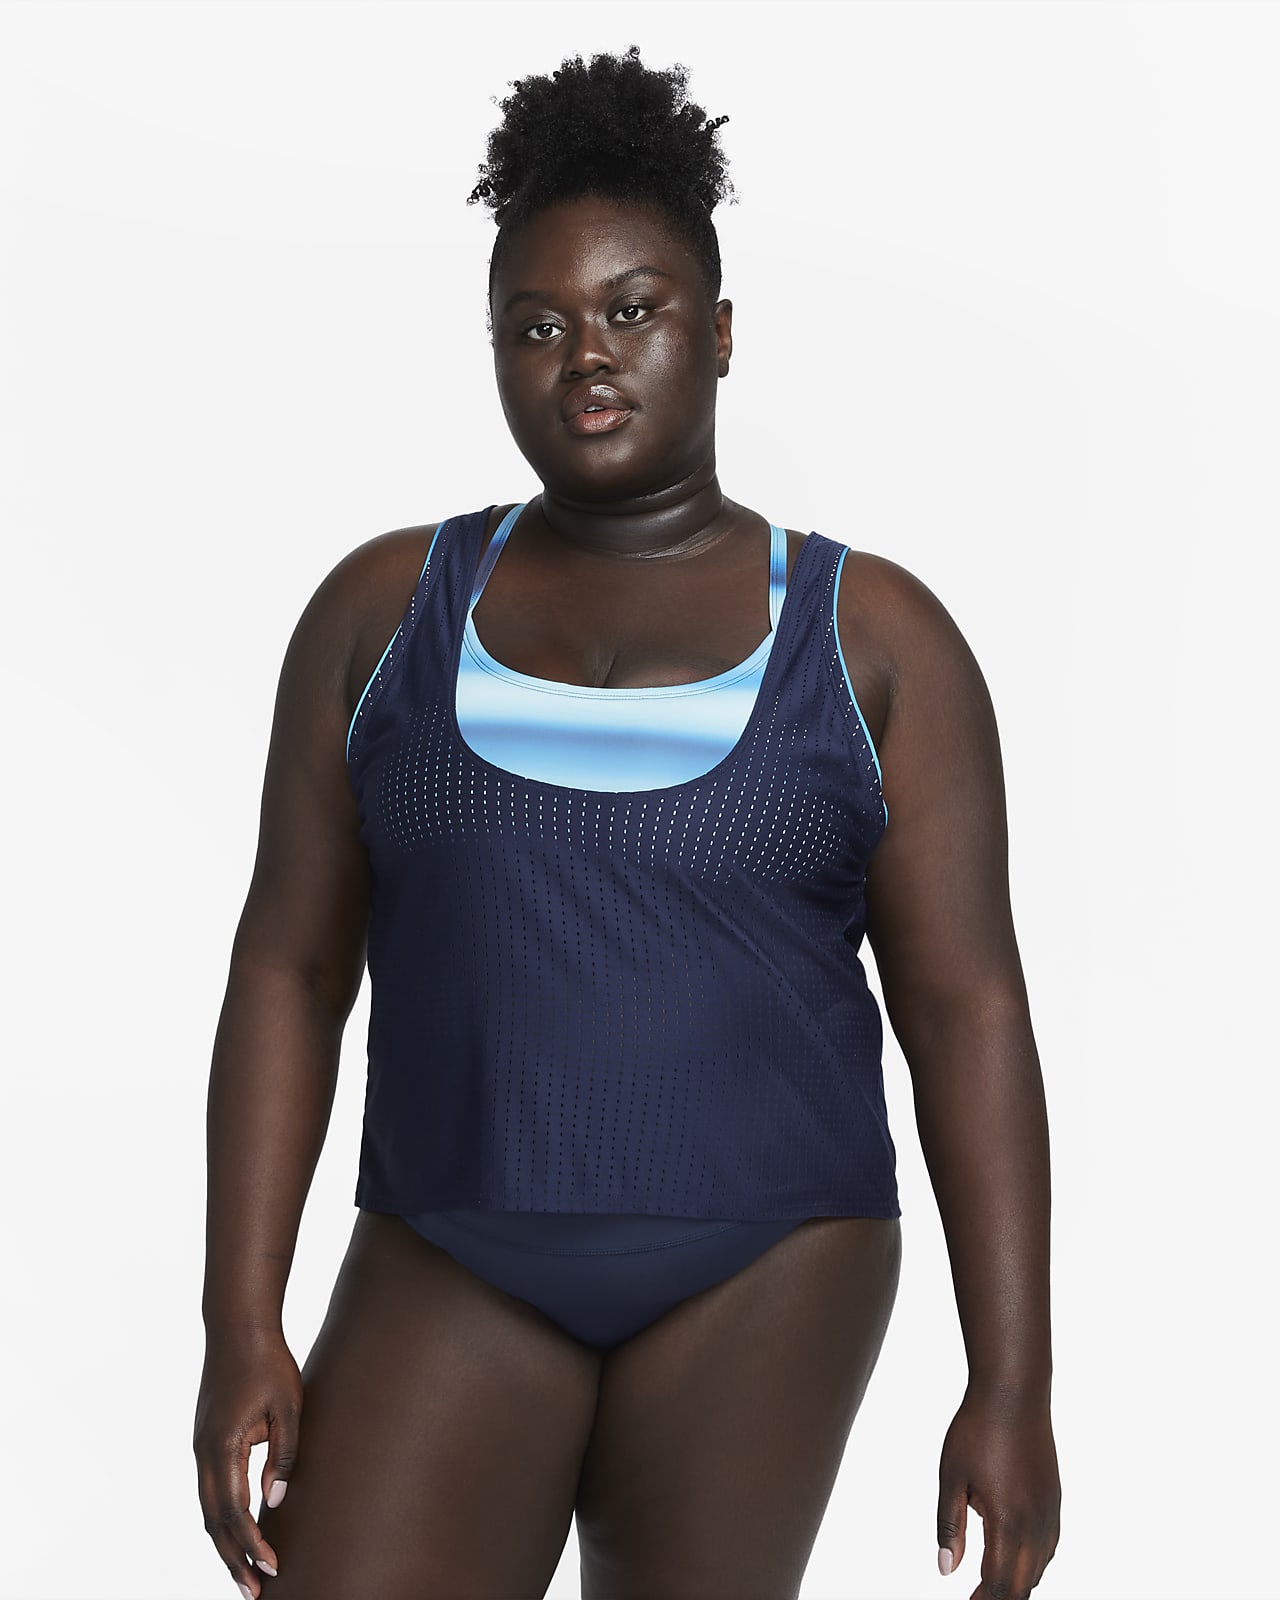 Nike Tankini Women's Swimsuit Top.